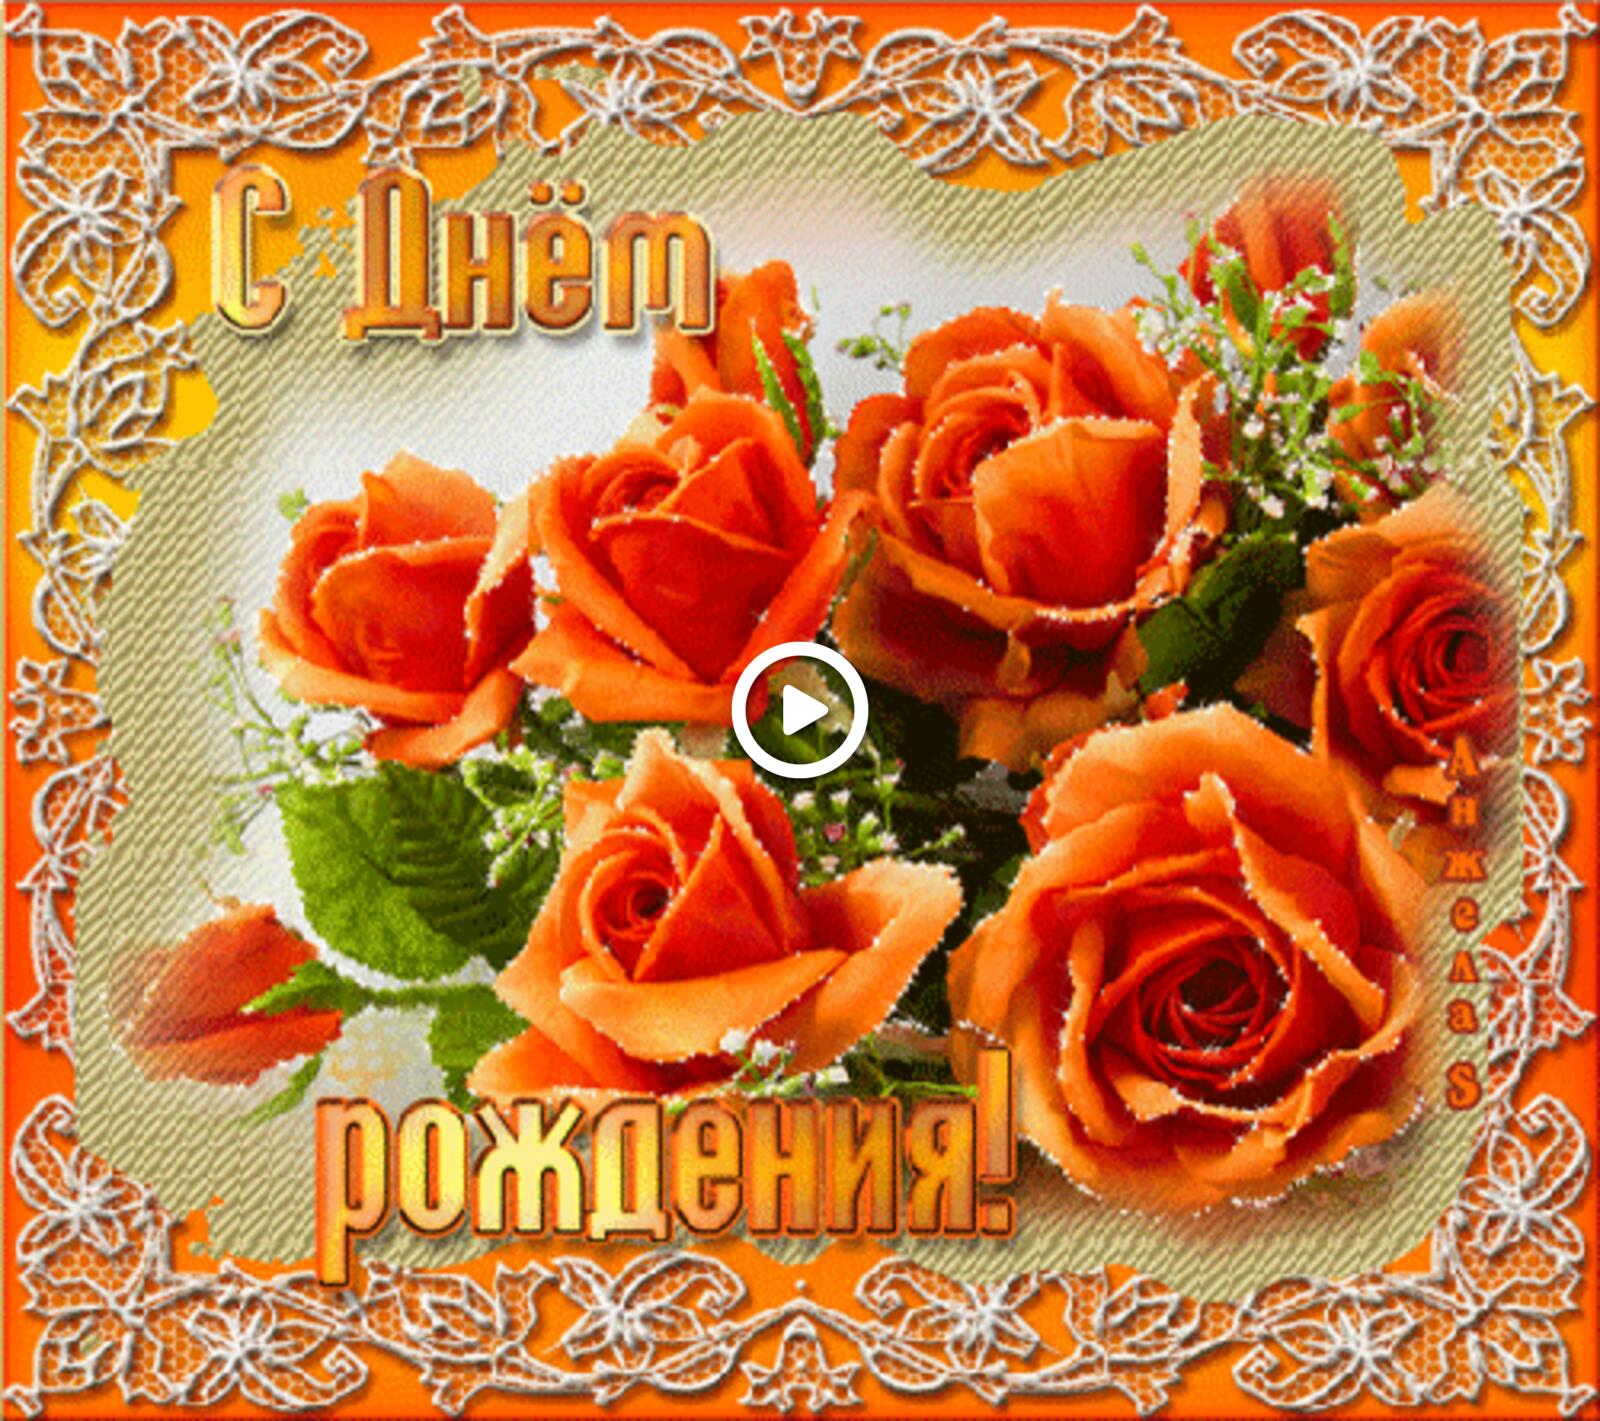 一张以生日快乐 玫瑰 鲜花为主题的明信片